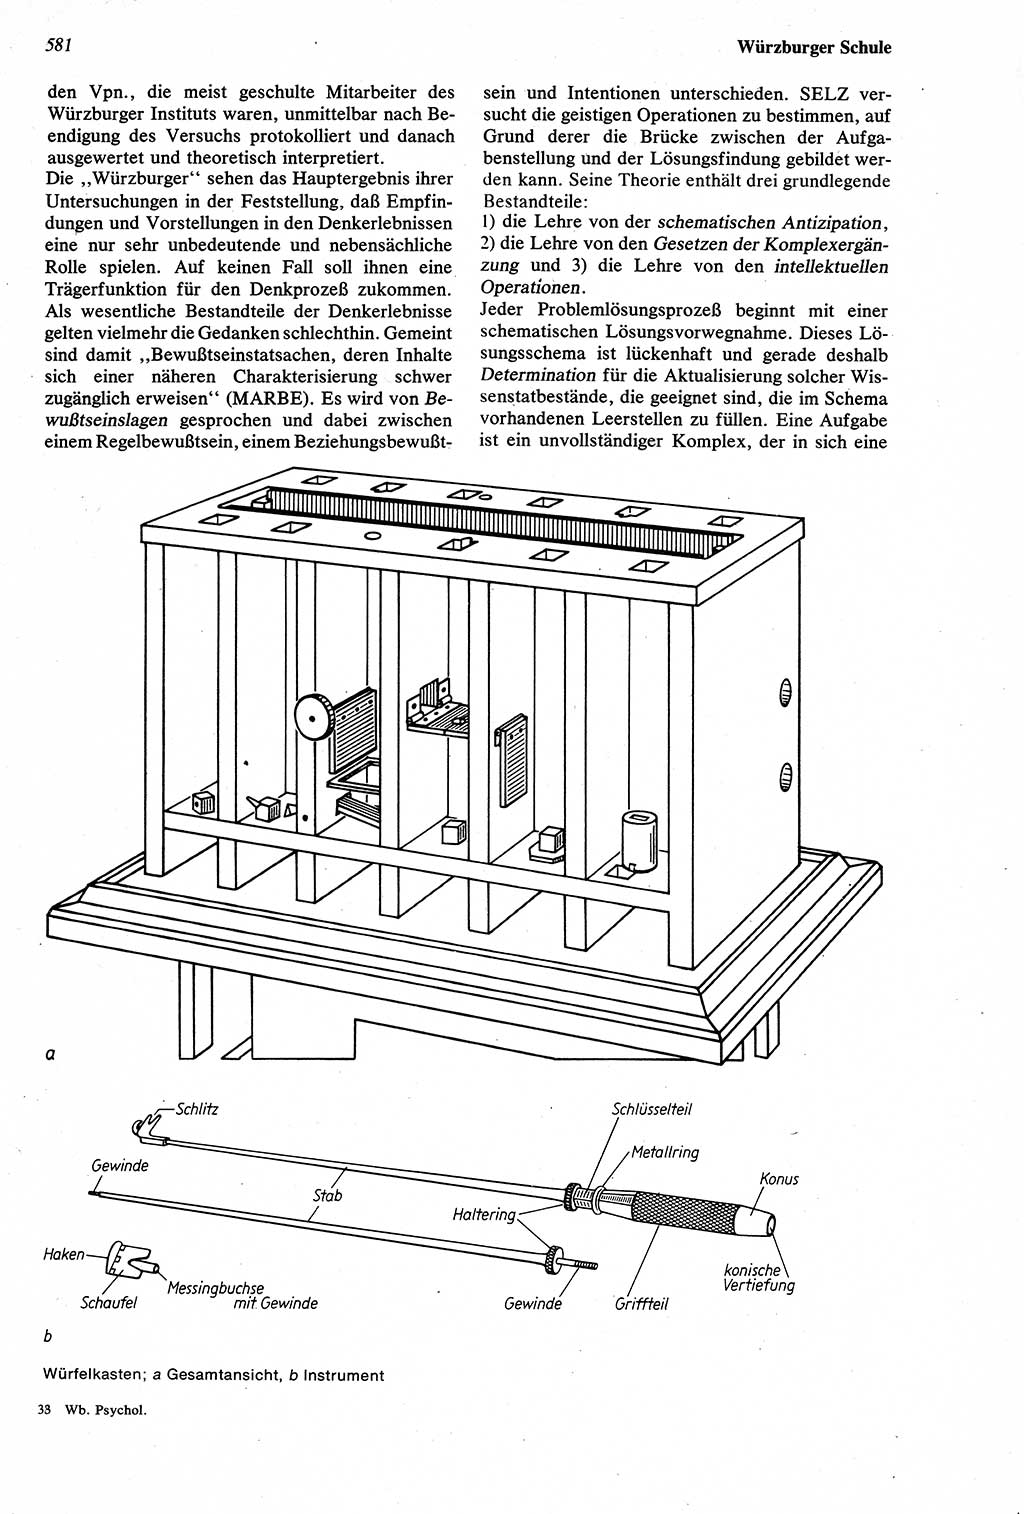 Wörterbuch der Psychologie [Deutsche Demokratische Republik (DDR)] 1976, Seite 581 (Wb. Psych. DDR 1976, S. 581)